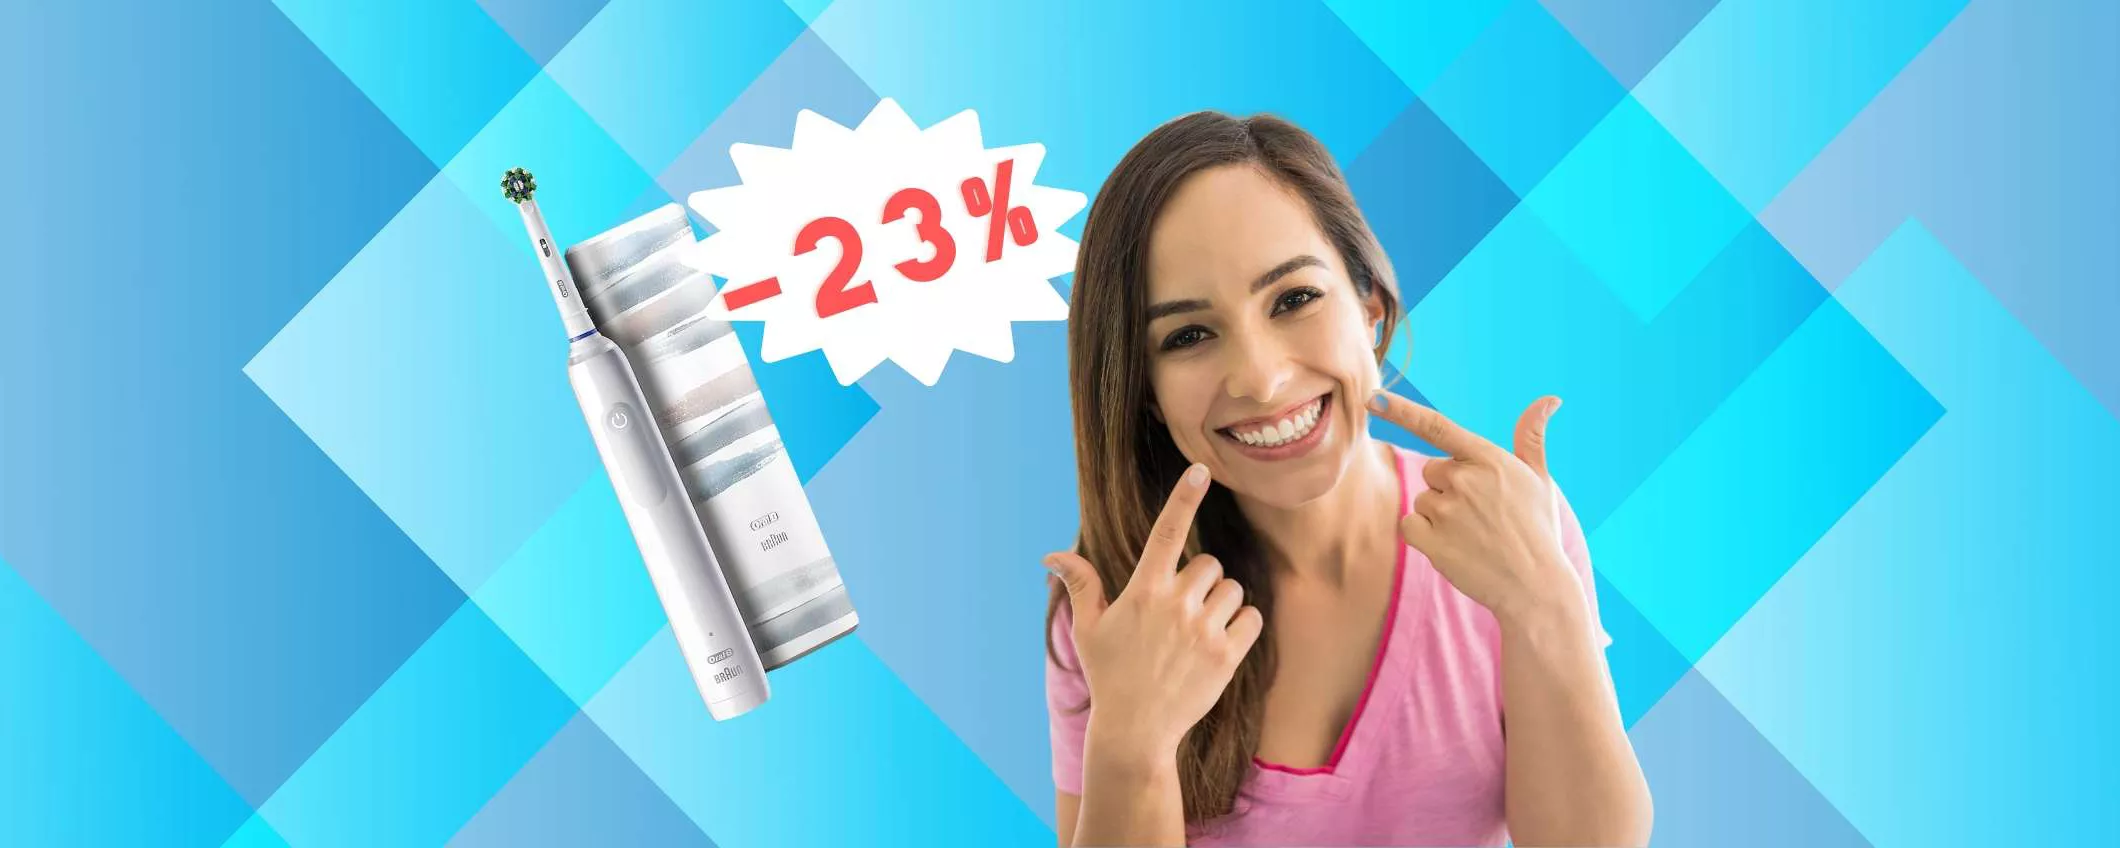 Oral-B Pro 3 3500: spazzolino elettrico e custodia a prezzo HOT